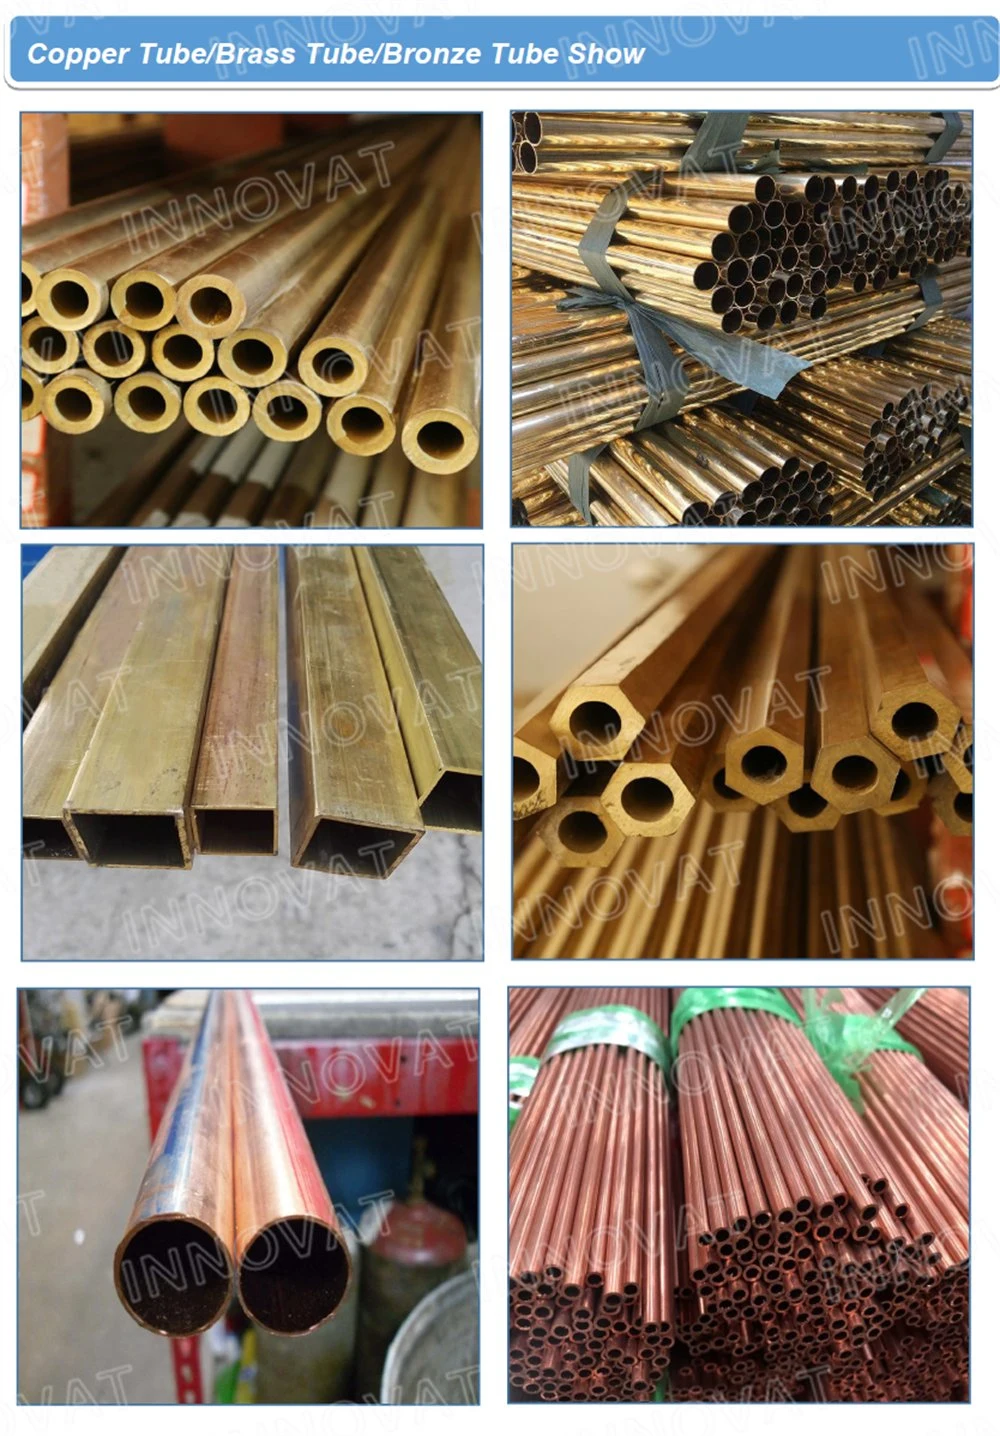 Copper Mould Tubes Manufacturer Steel Rod 180 mm Round Billet 200 mm Round Ingot 180 mm Steel Bar Casting CCM Cooper Mould Tubes